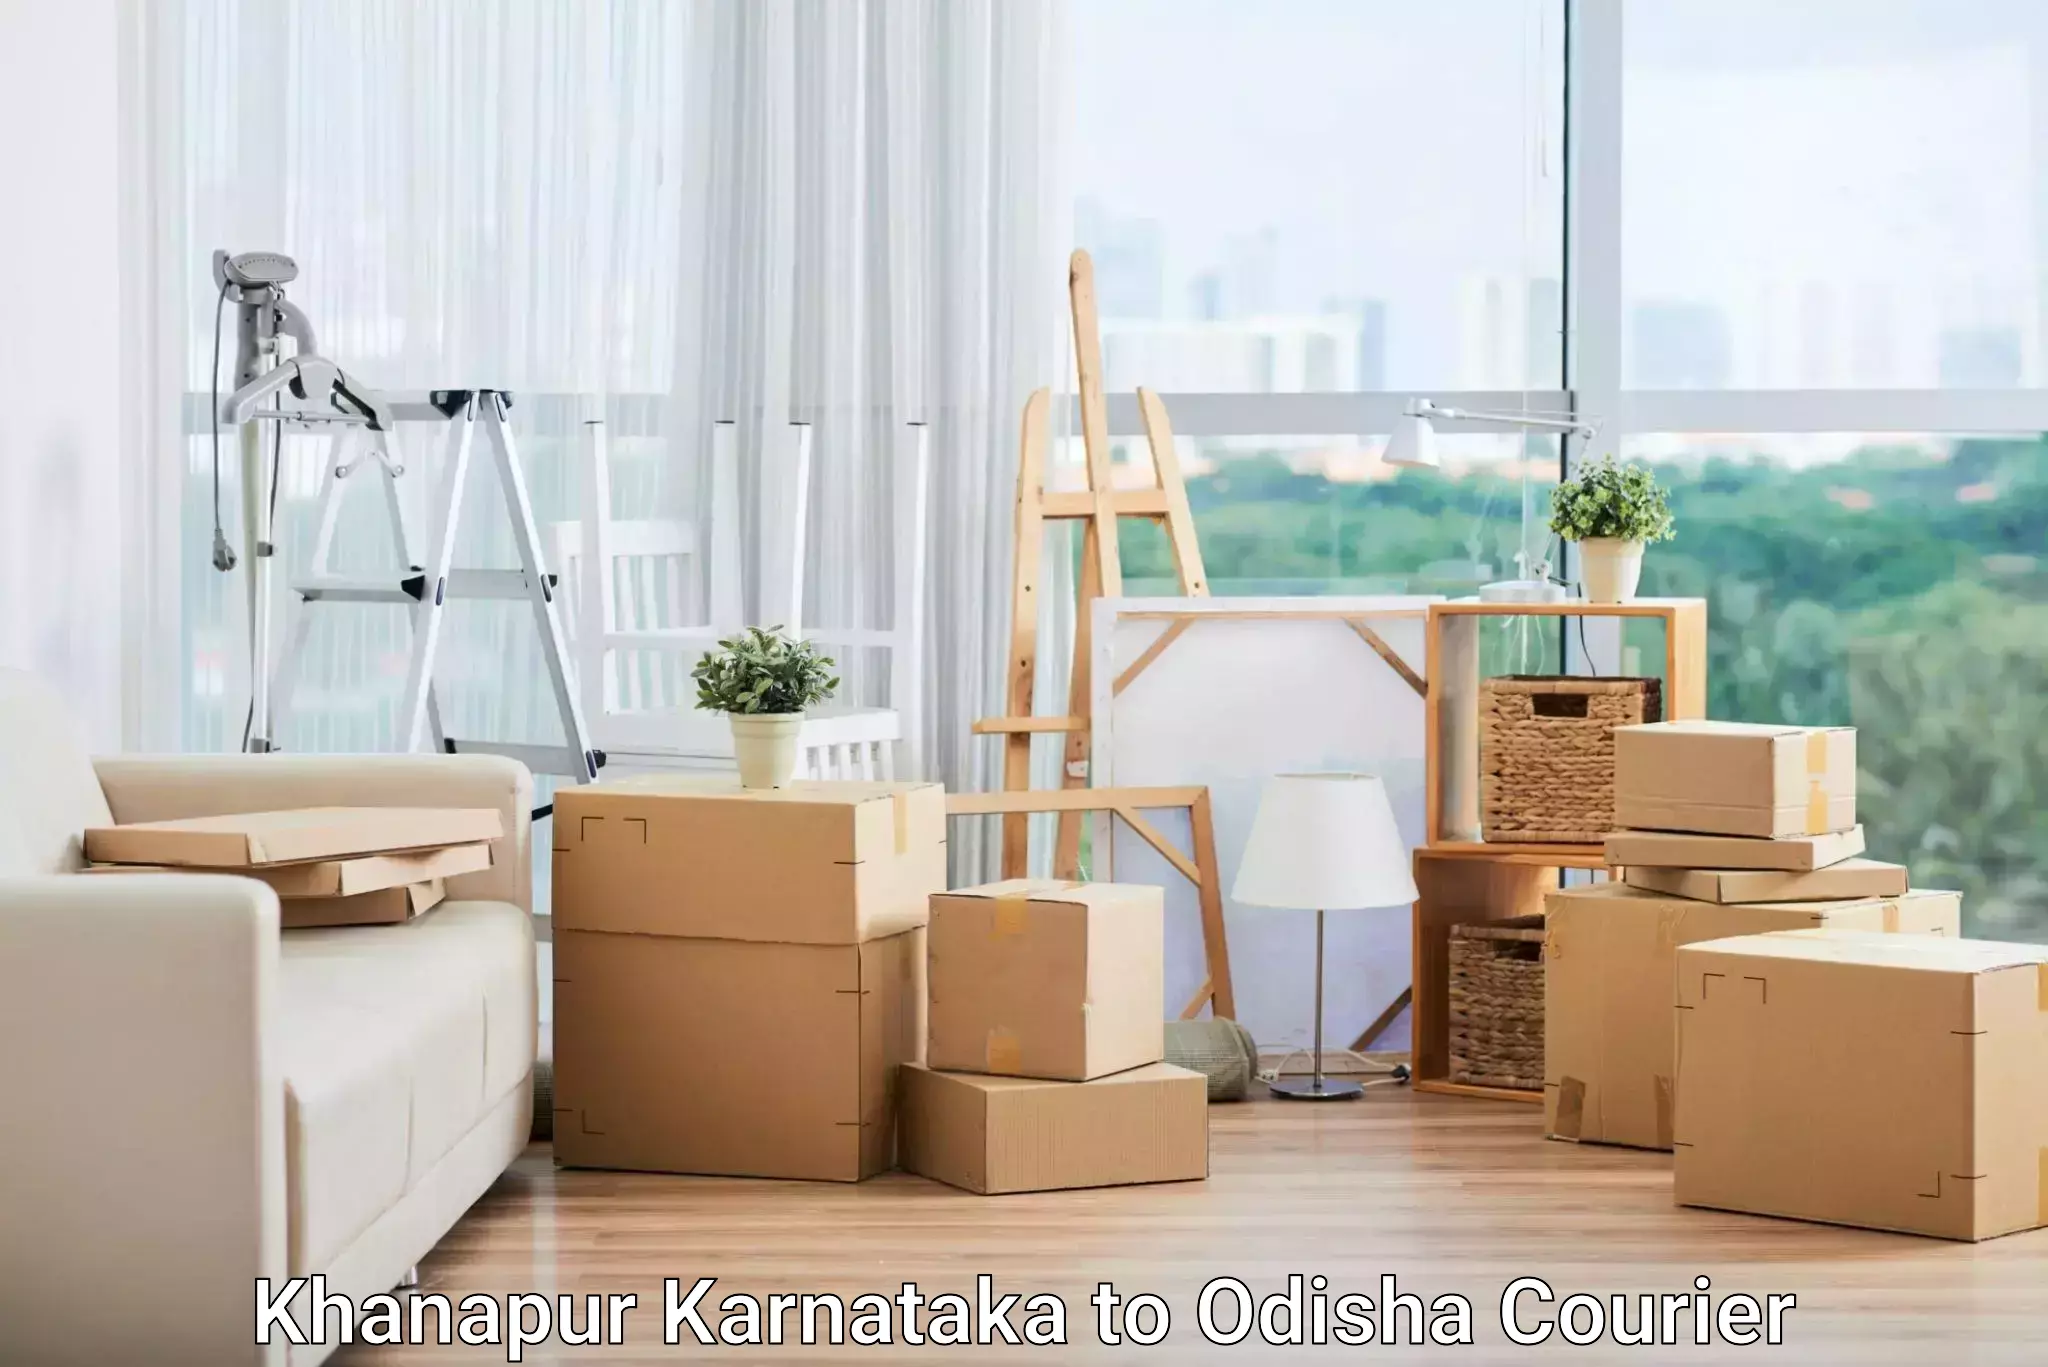 Reliable parcel services Khanapur Karnataka to Paralakhemundi